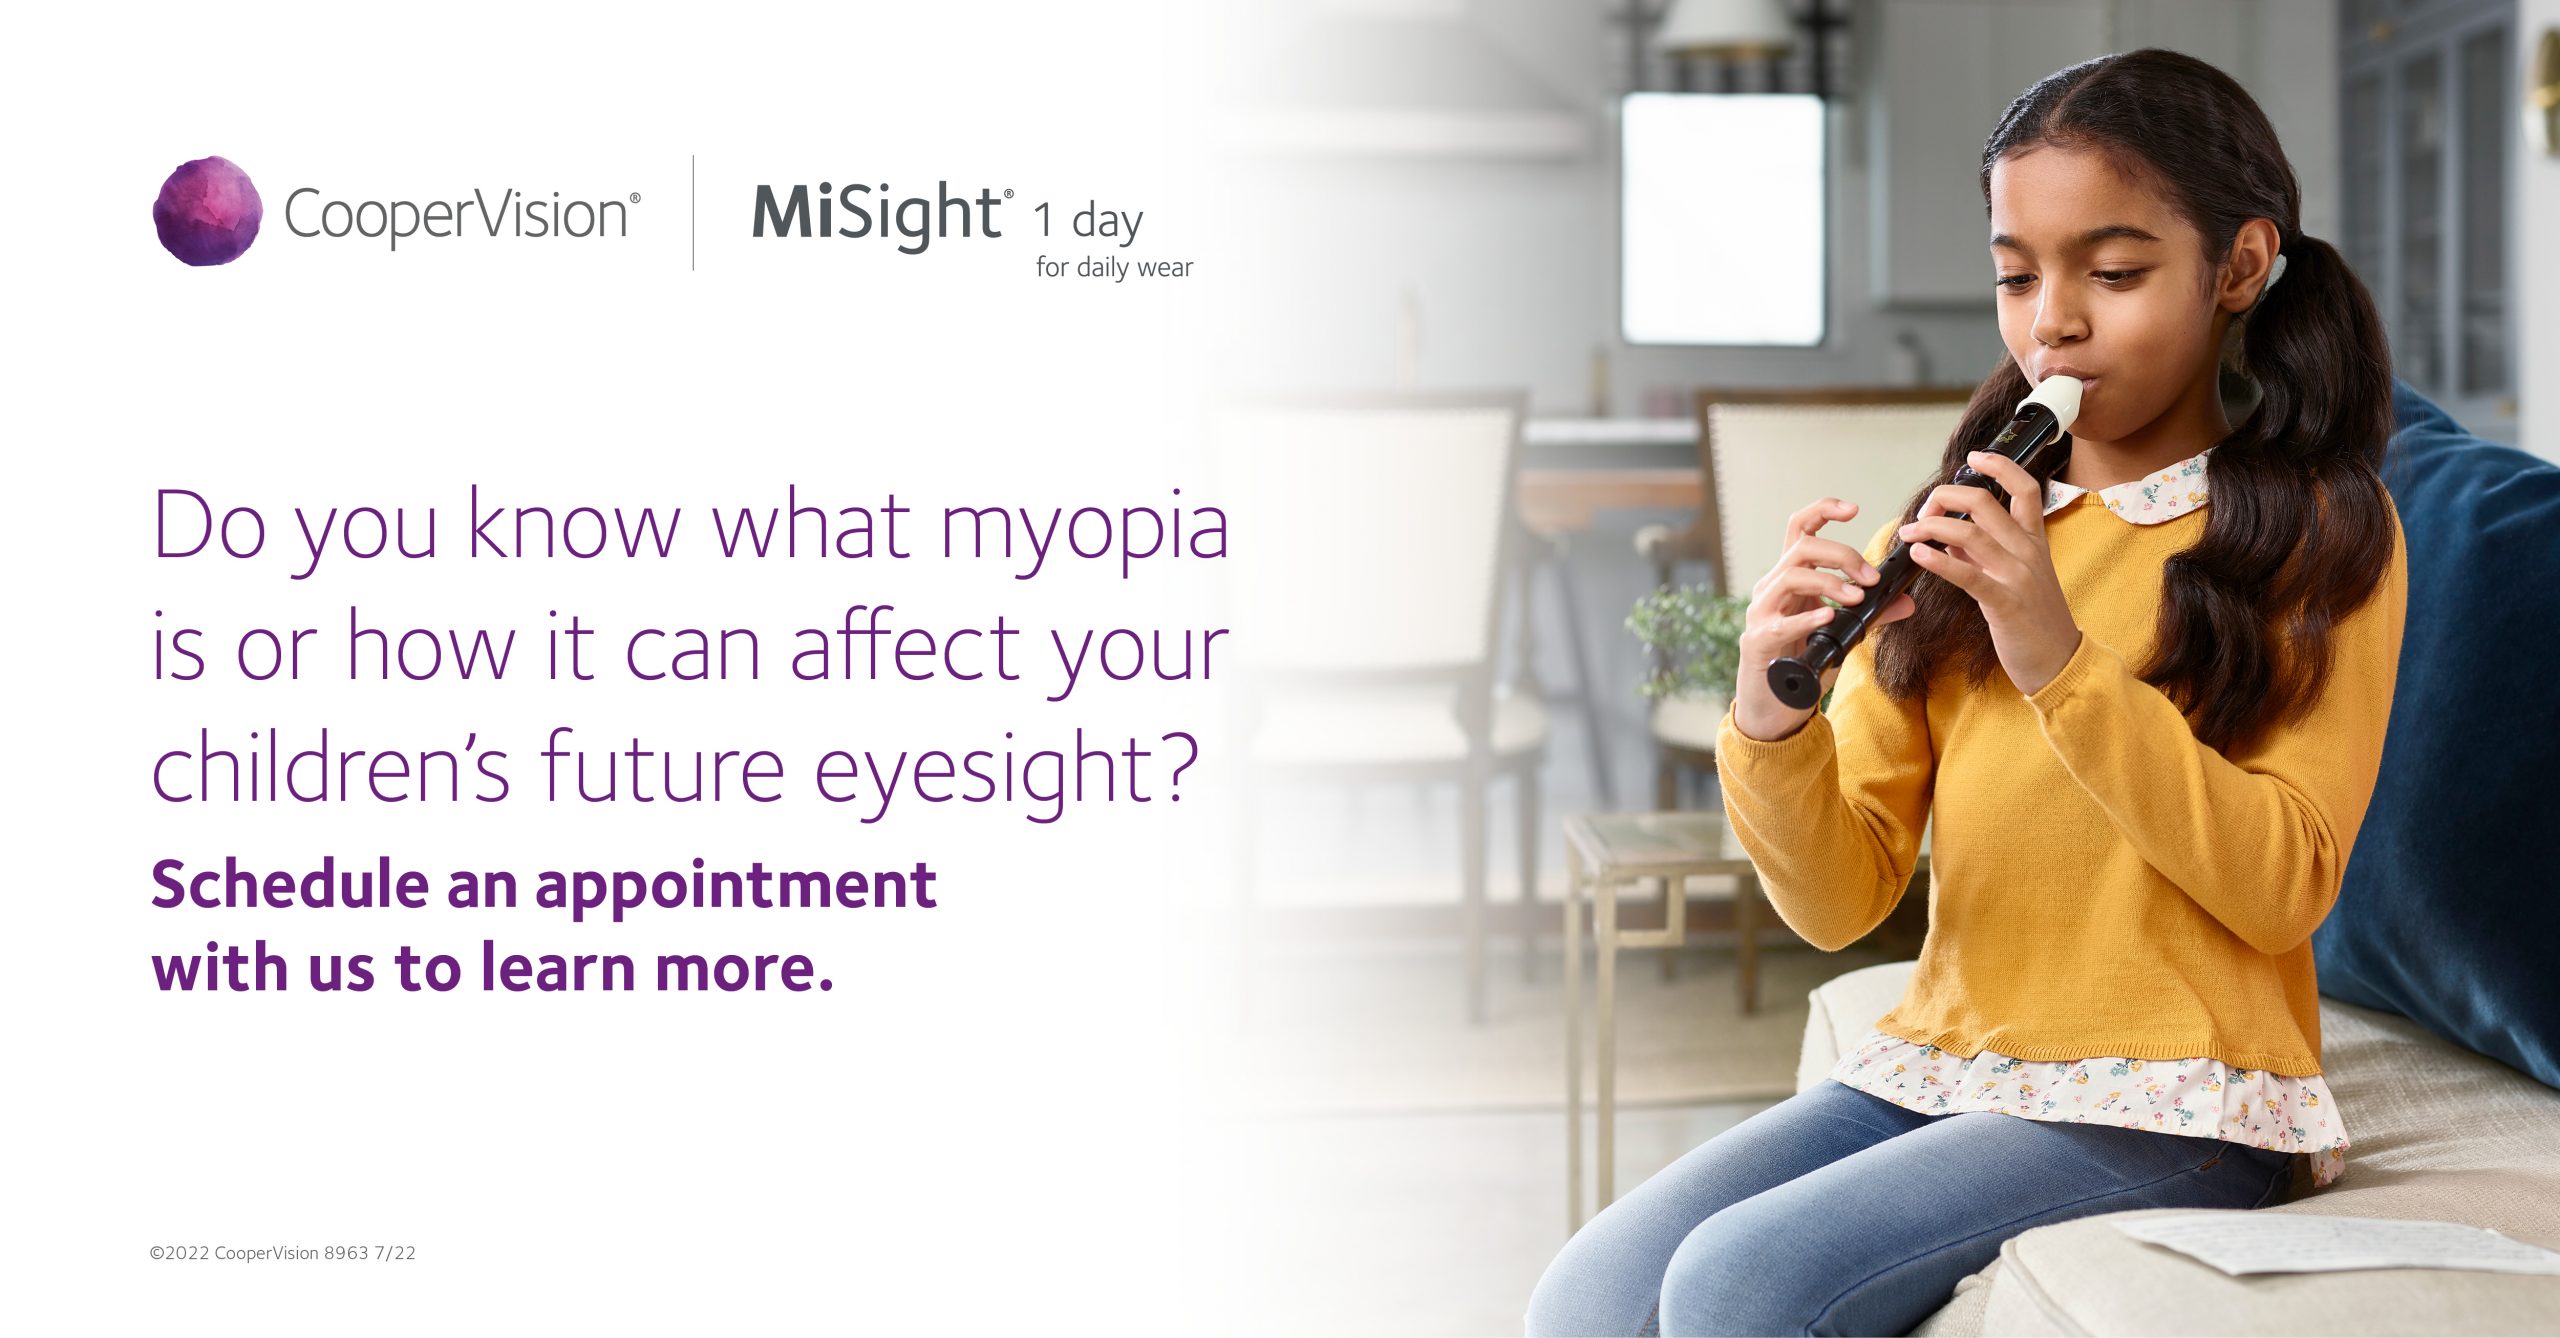 myopia-control-treatment-management-misight-contact-lenses